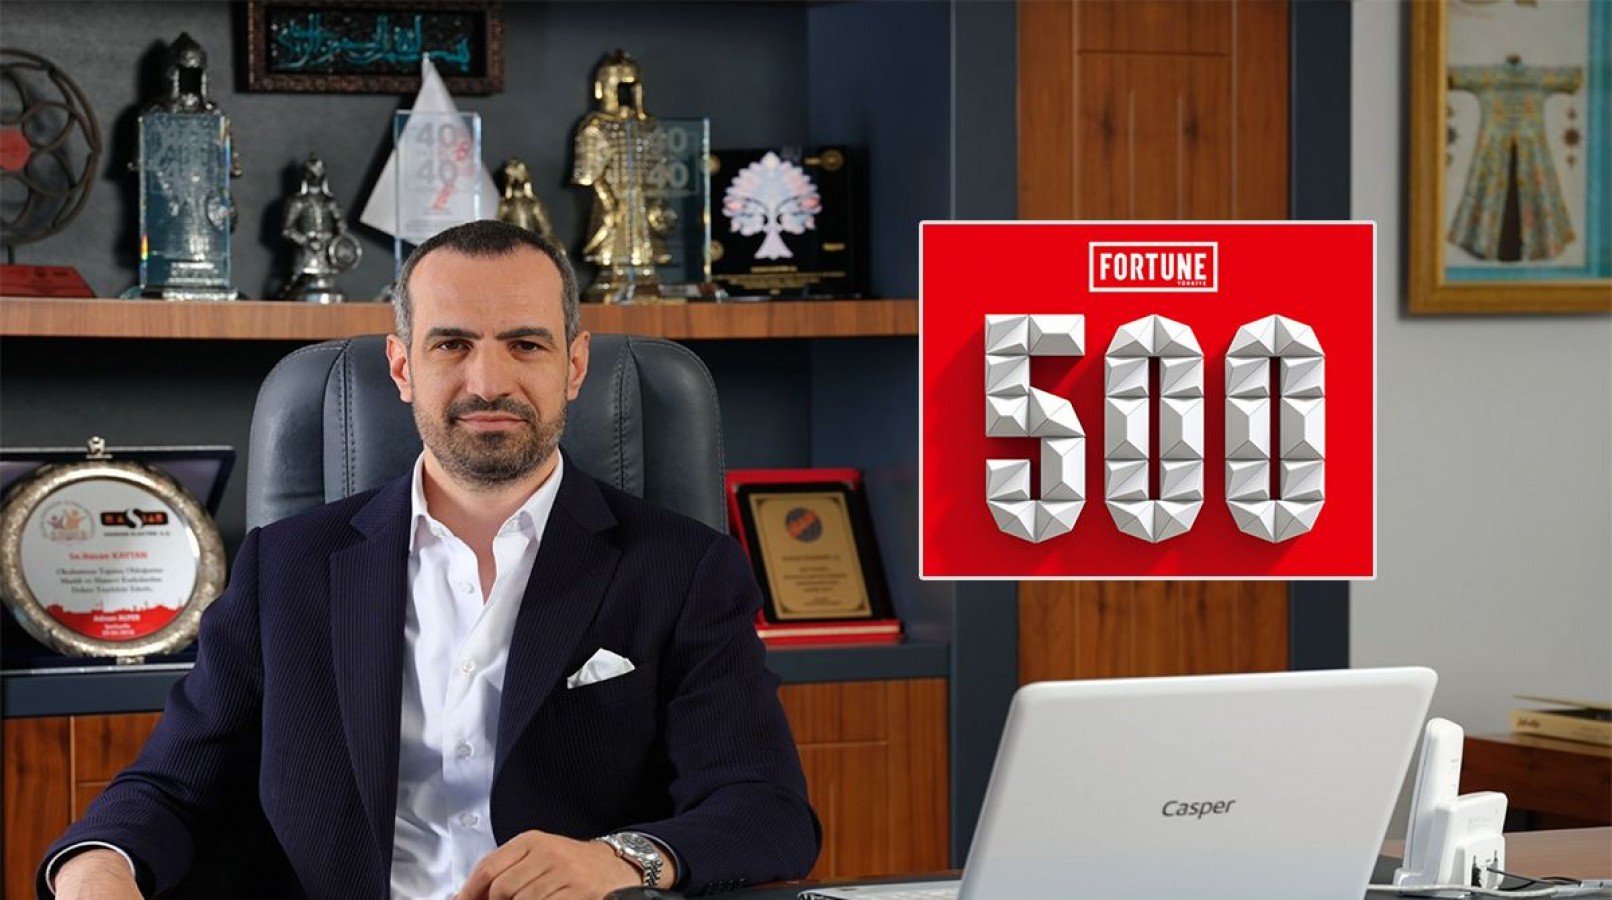 Hassan Elektrik Türkiye'de devler arasında Fortune 500 Listesinde..;